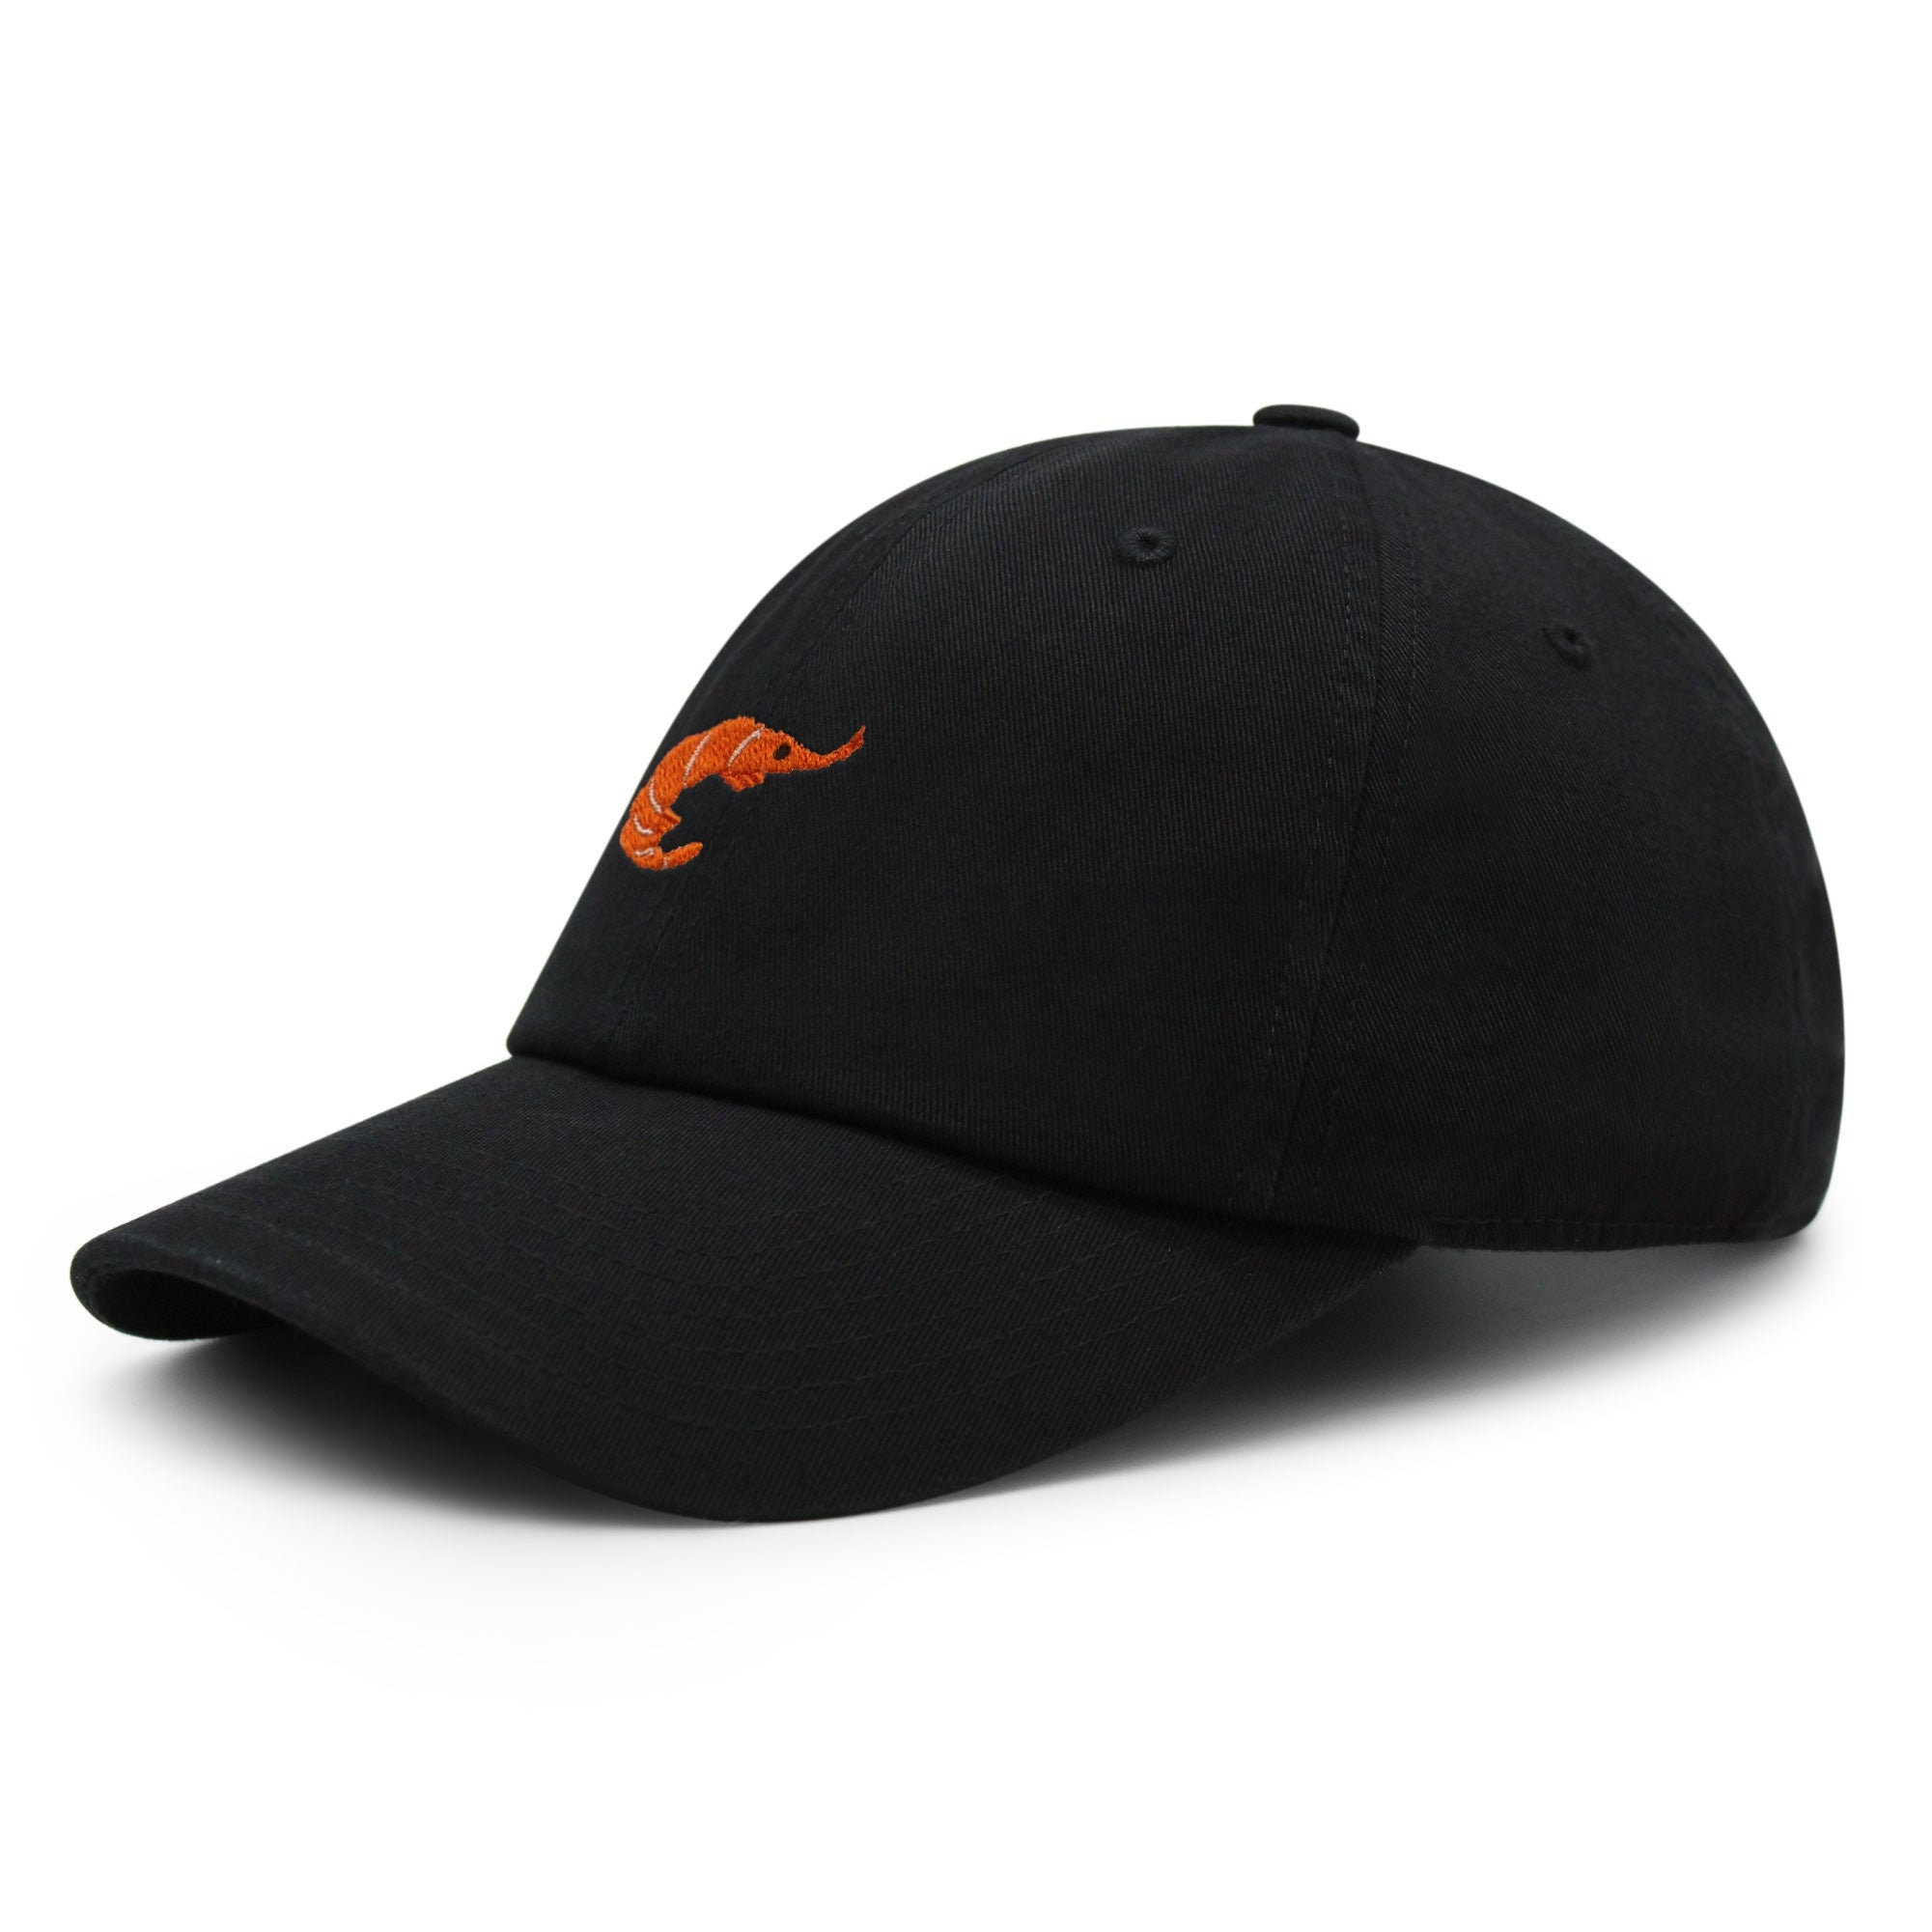 Shrimp Premium Dad Hat Embroidered Baseball Cap Fishing Foodie Ocean